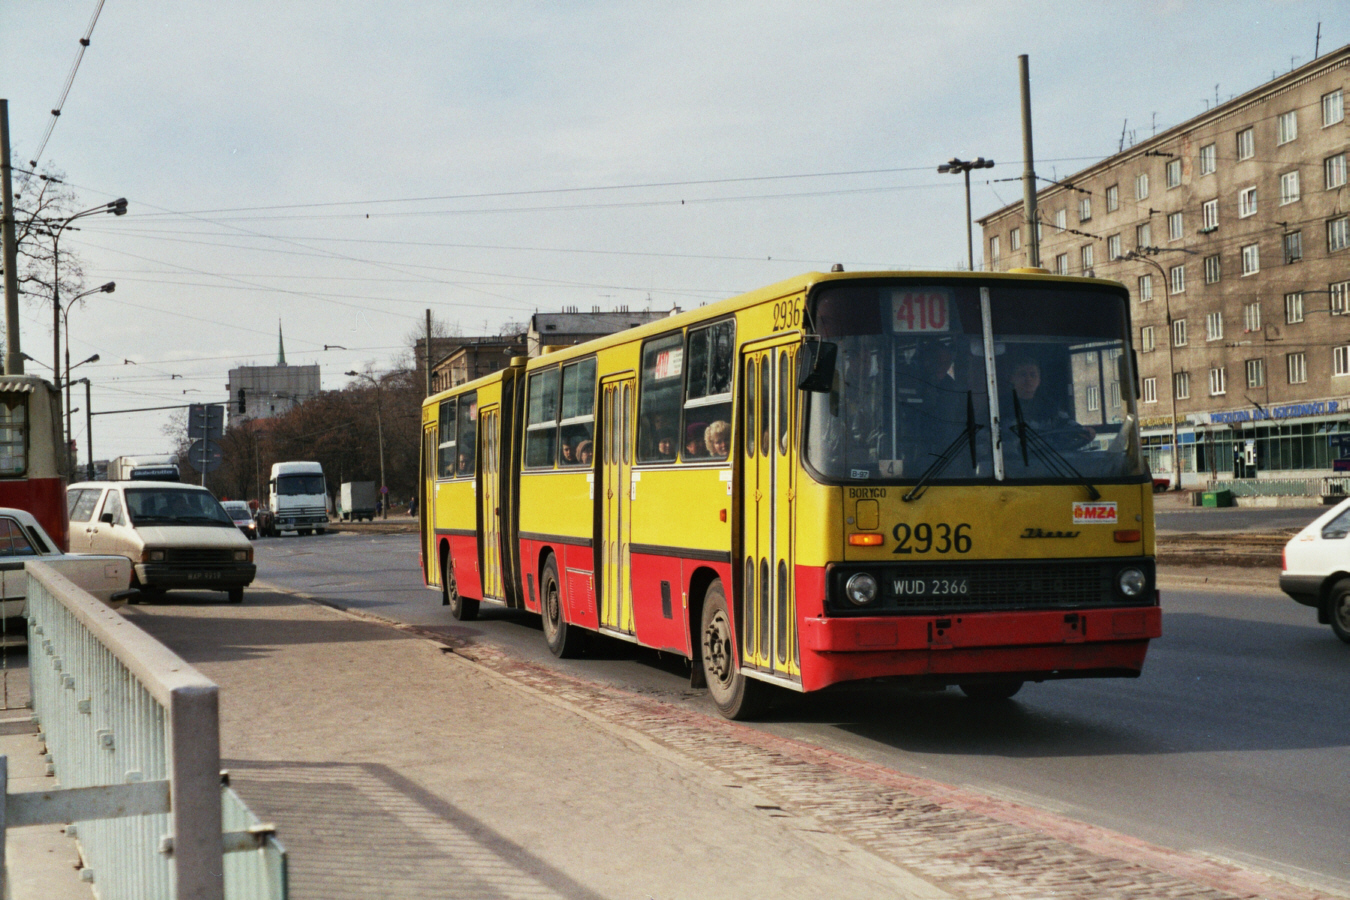 2936
Ikarus 280, produkcja 1989 (ex. 3002), NG 1996, kasacja 2002.
Po likwidacji zajezdni R-12 Piaseczno, do zakładu R-9 Chełmska przeniesiono 11 Ikarusów 280, w tym dwa przed naprawą główną - 3002 i 3022. W 1996 po naprawie całopojazdowej wóz 3002 przenumerowano na 2936 a 3022 na 2930.
Były to pierwsze wolne numery z Chełmskiego zakresu 2929 - 2999.
Szkoda, że w historii Warszawskich Ikarusów nigdy nie nadano numery z zakresu 2926 - 2928.


Foto: P. B. Jezierski
